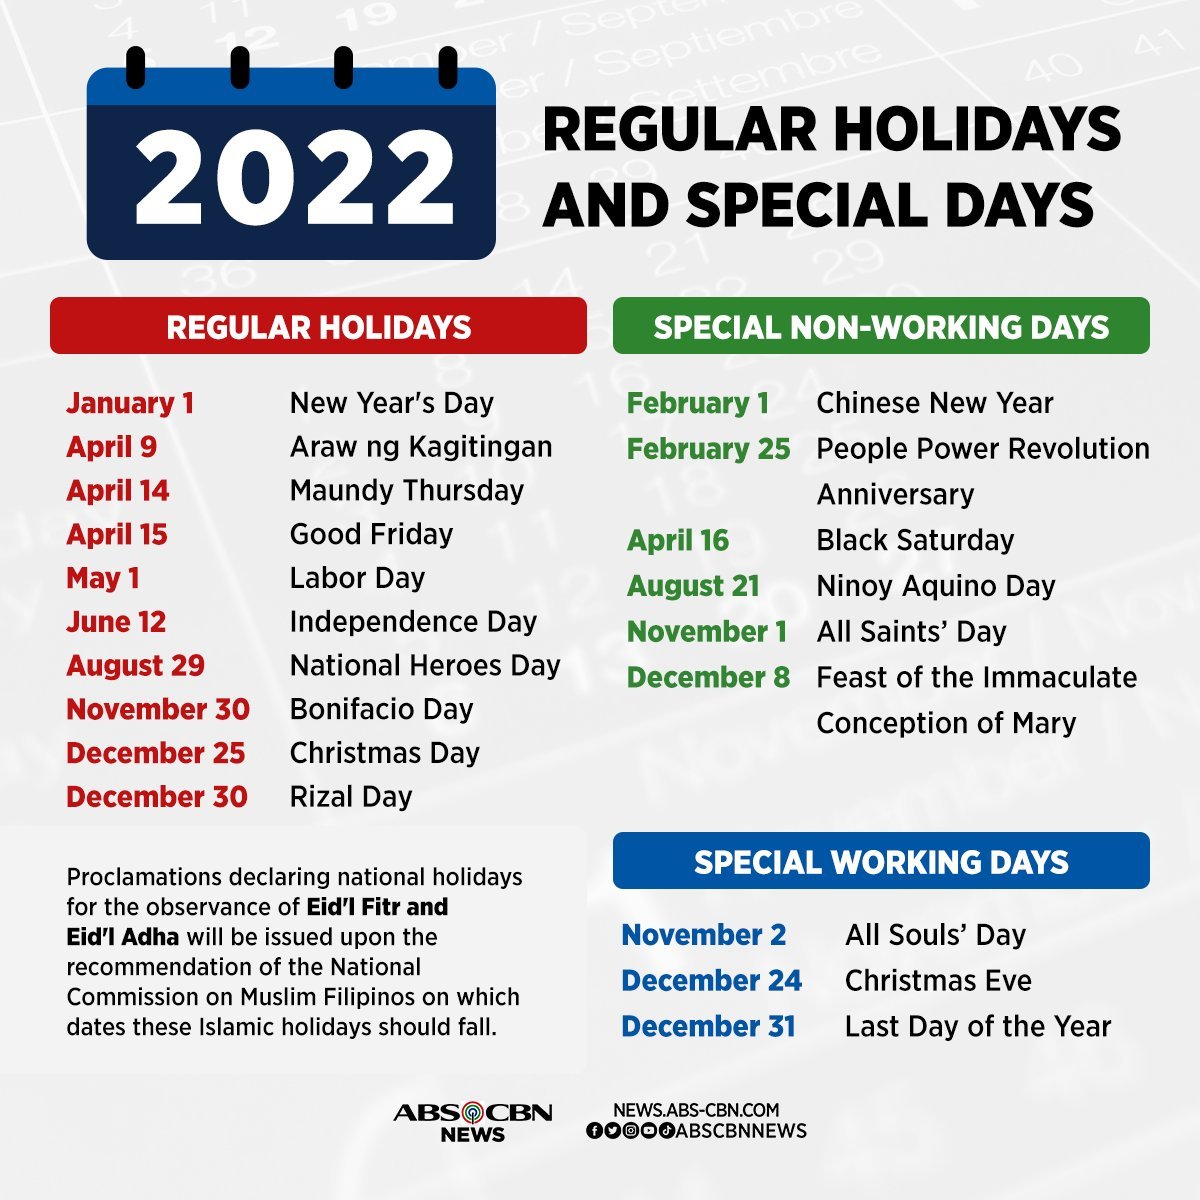 Ближайшие международные праздники. Philippines National Holidays. Holidays in the Philippines 2022. TDS Holiday 2022. Chinese National Holidays.